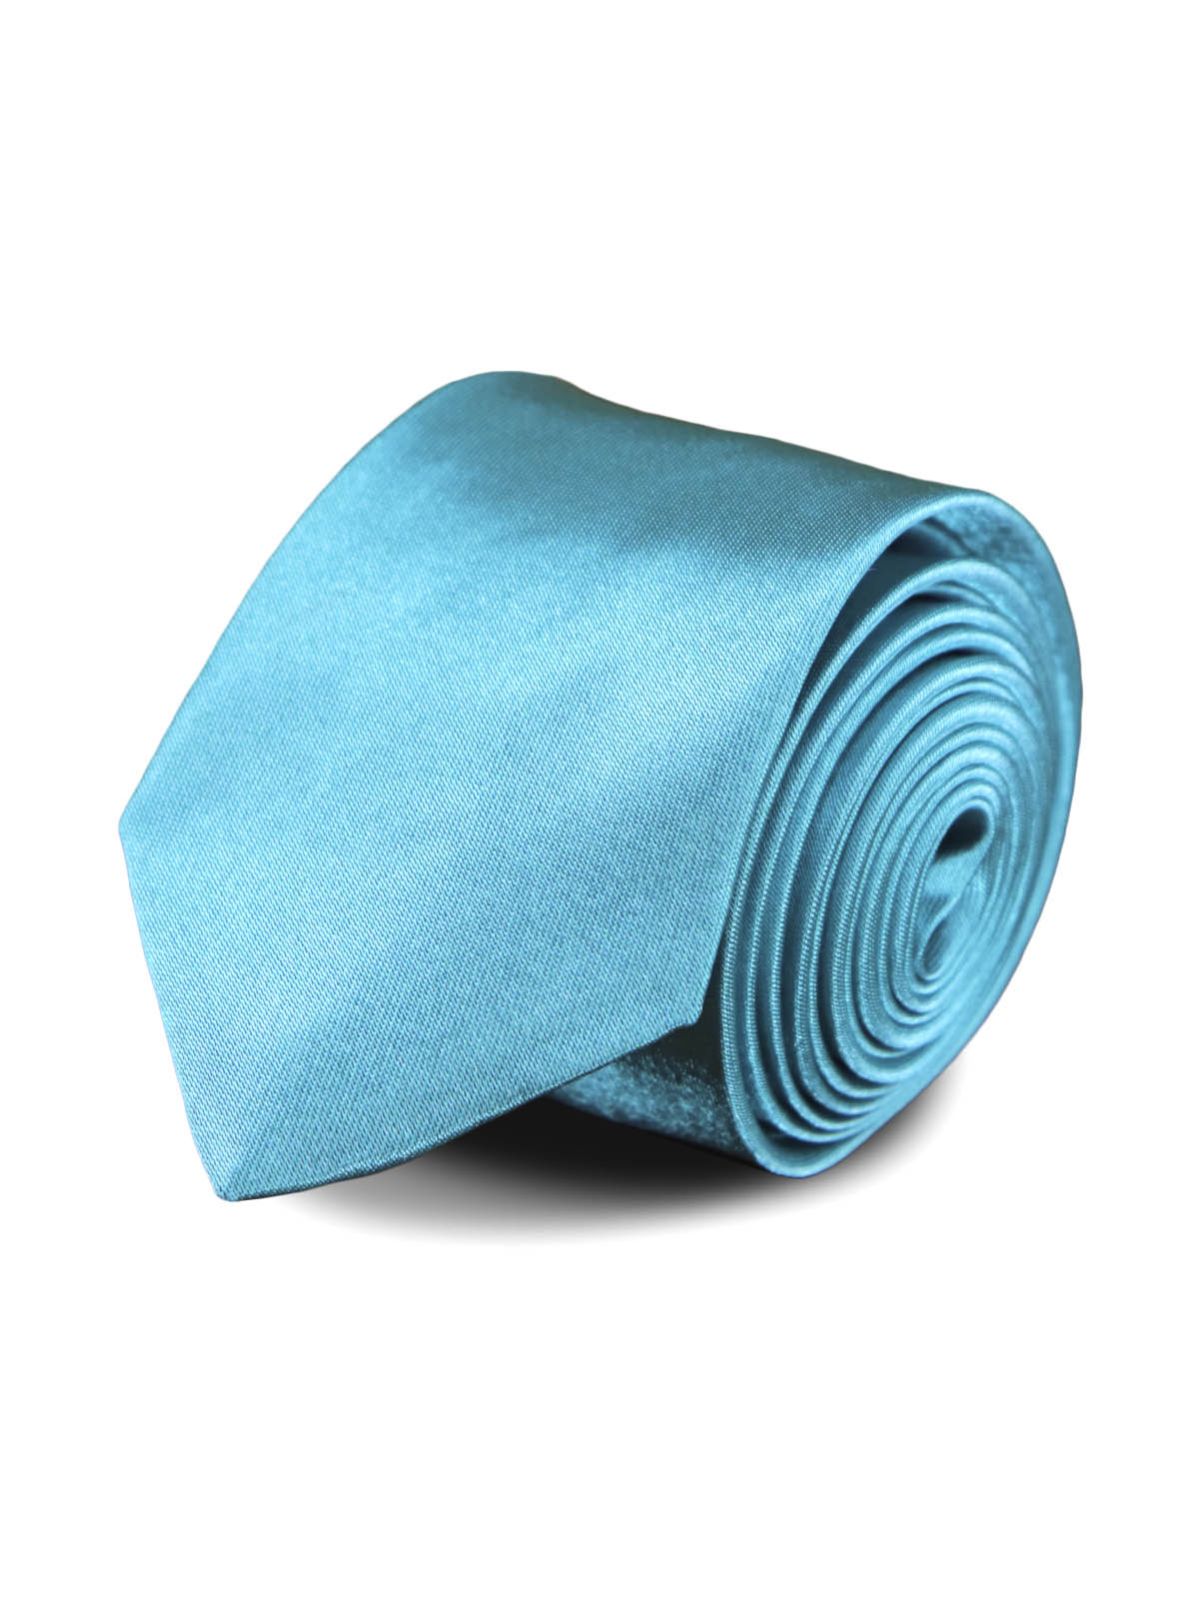 Галстук узкий атласный ярко-голубой описание: Фасон - Узкий галстук, Материал - Полиэстер, Цвет - Аквамарин, Размер - 5 х 141 см, Страна производства - Китай.